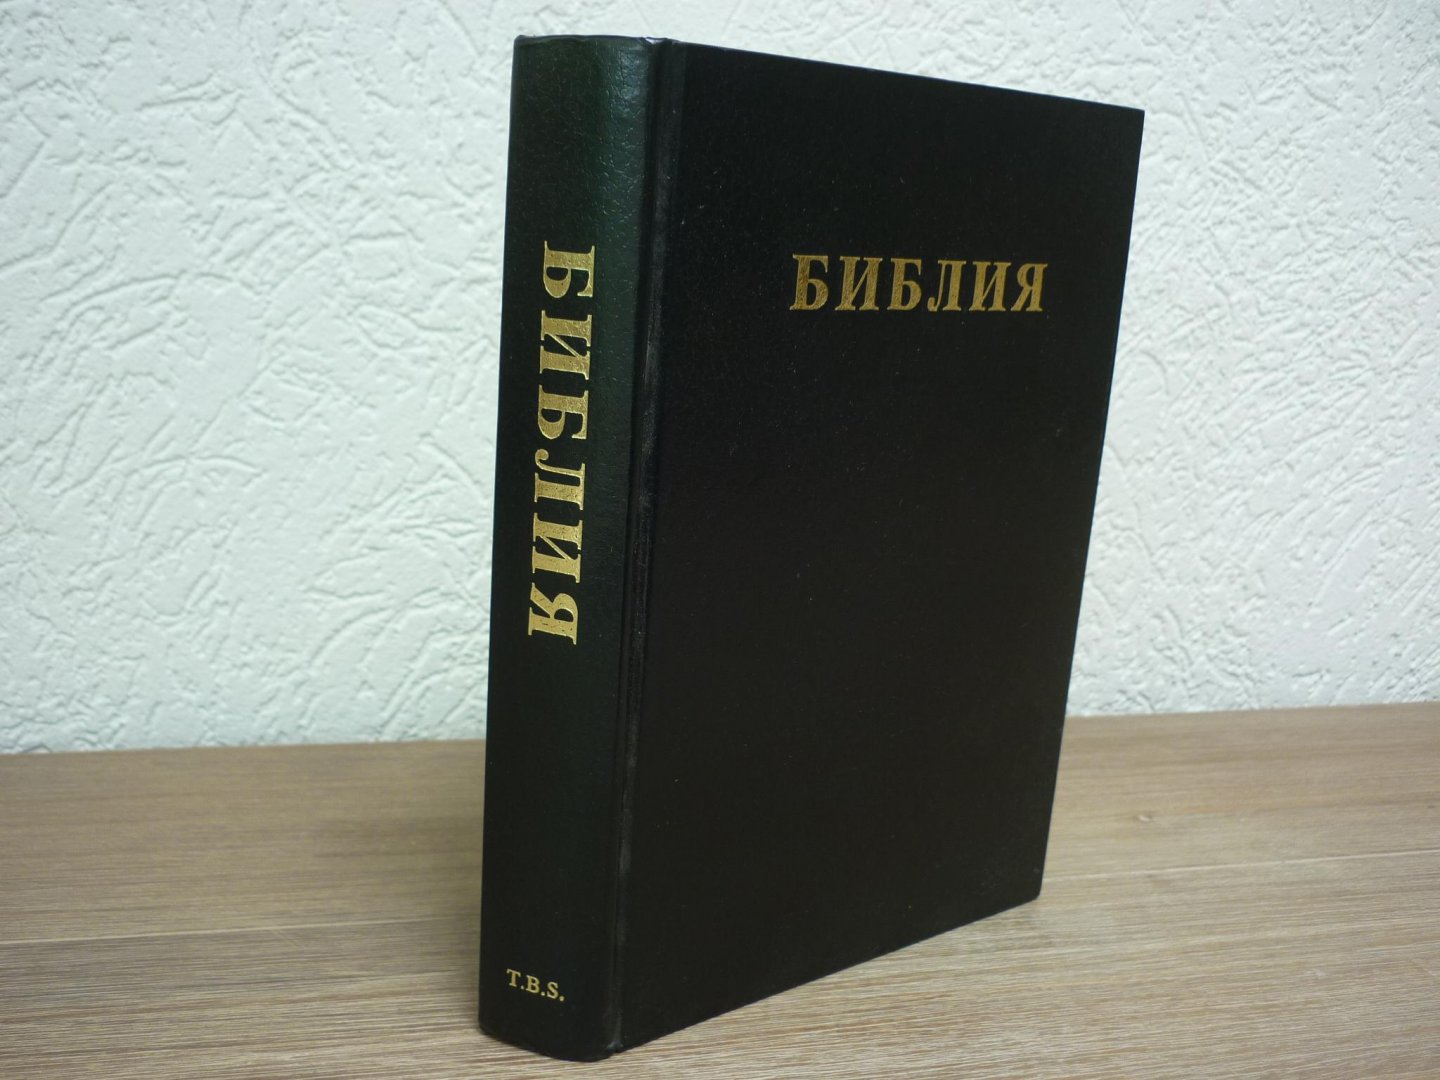  - Russchische Bijbel in een uitgave van Trinitarian Bible Society.